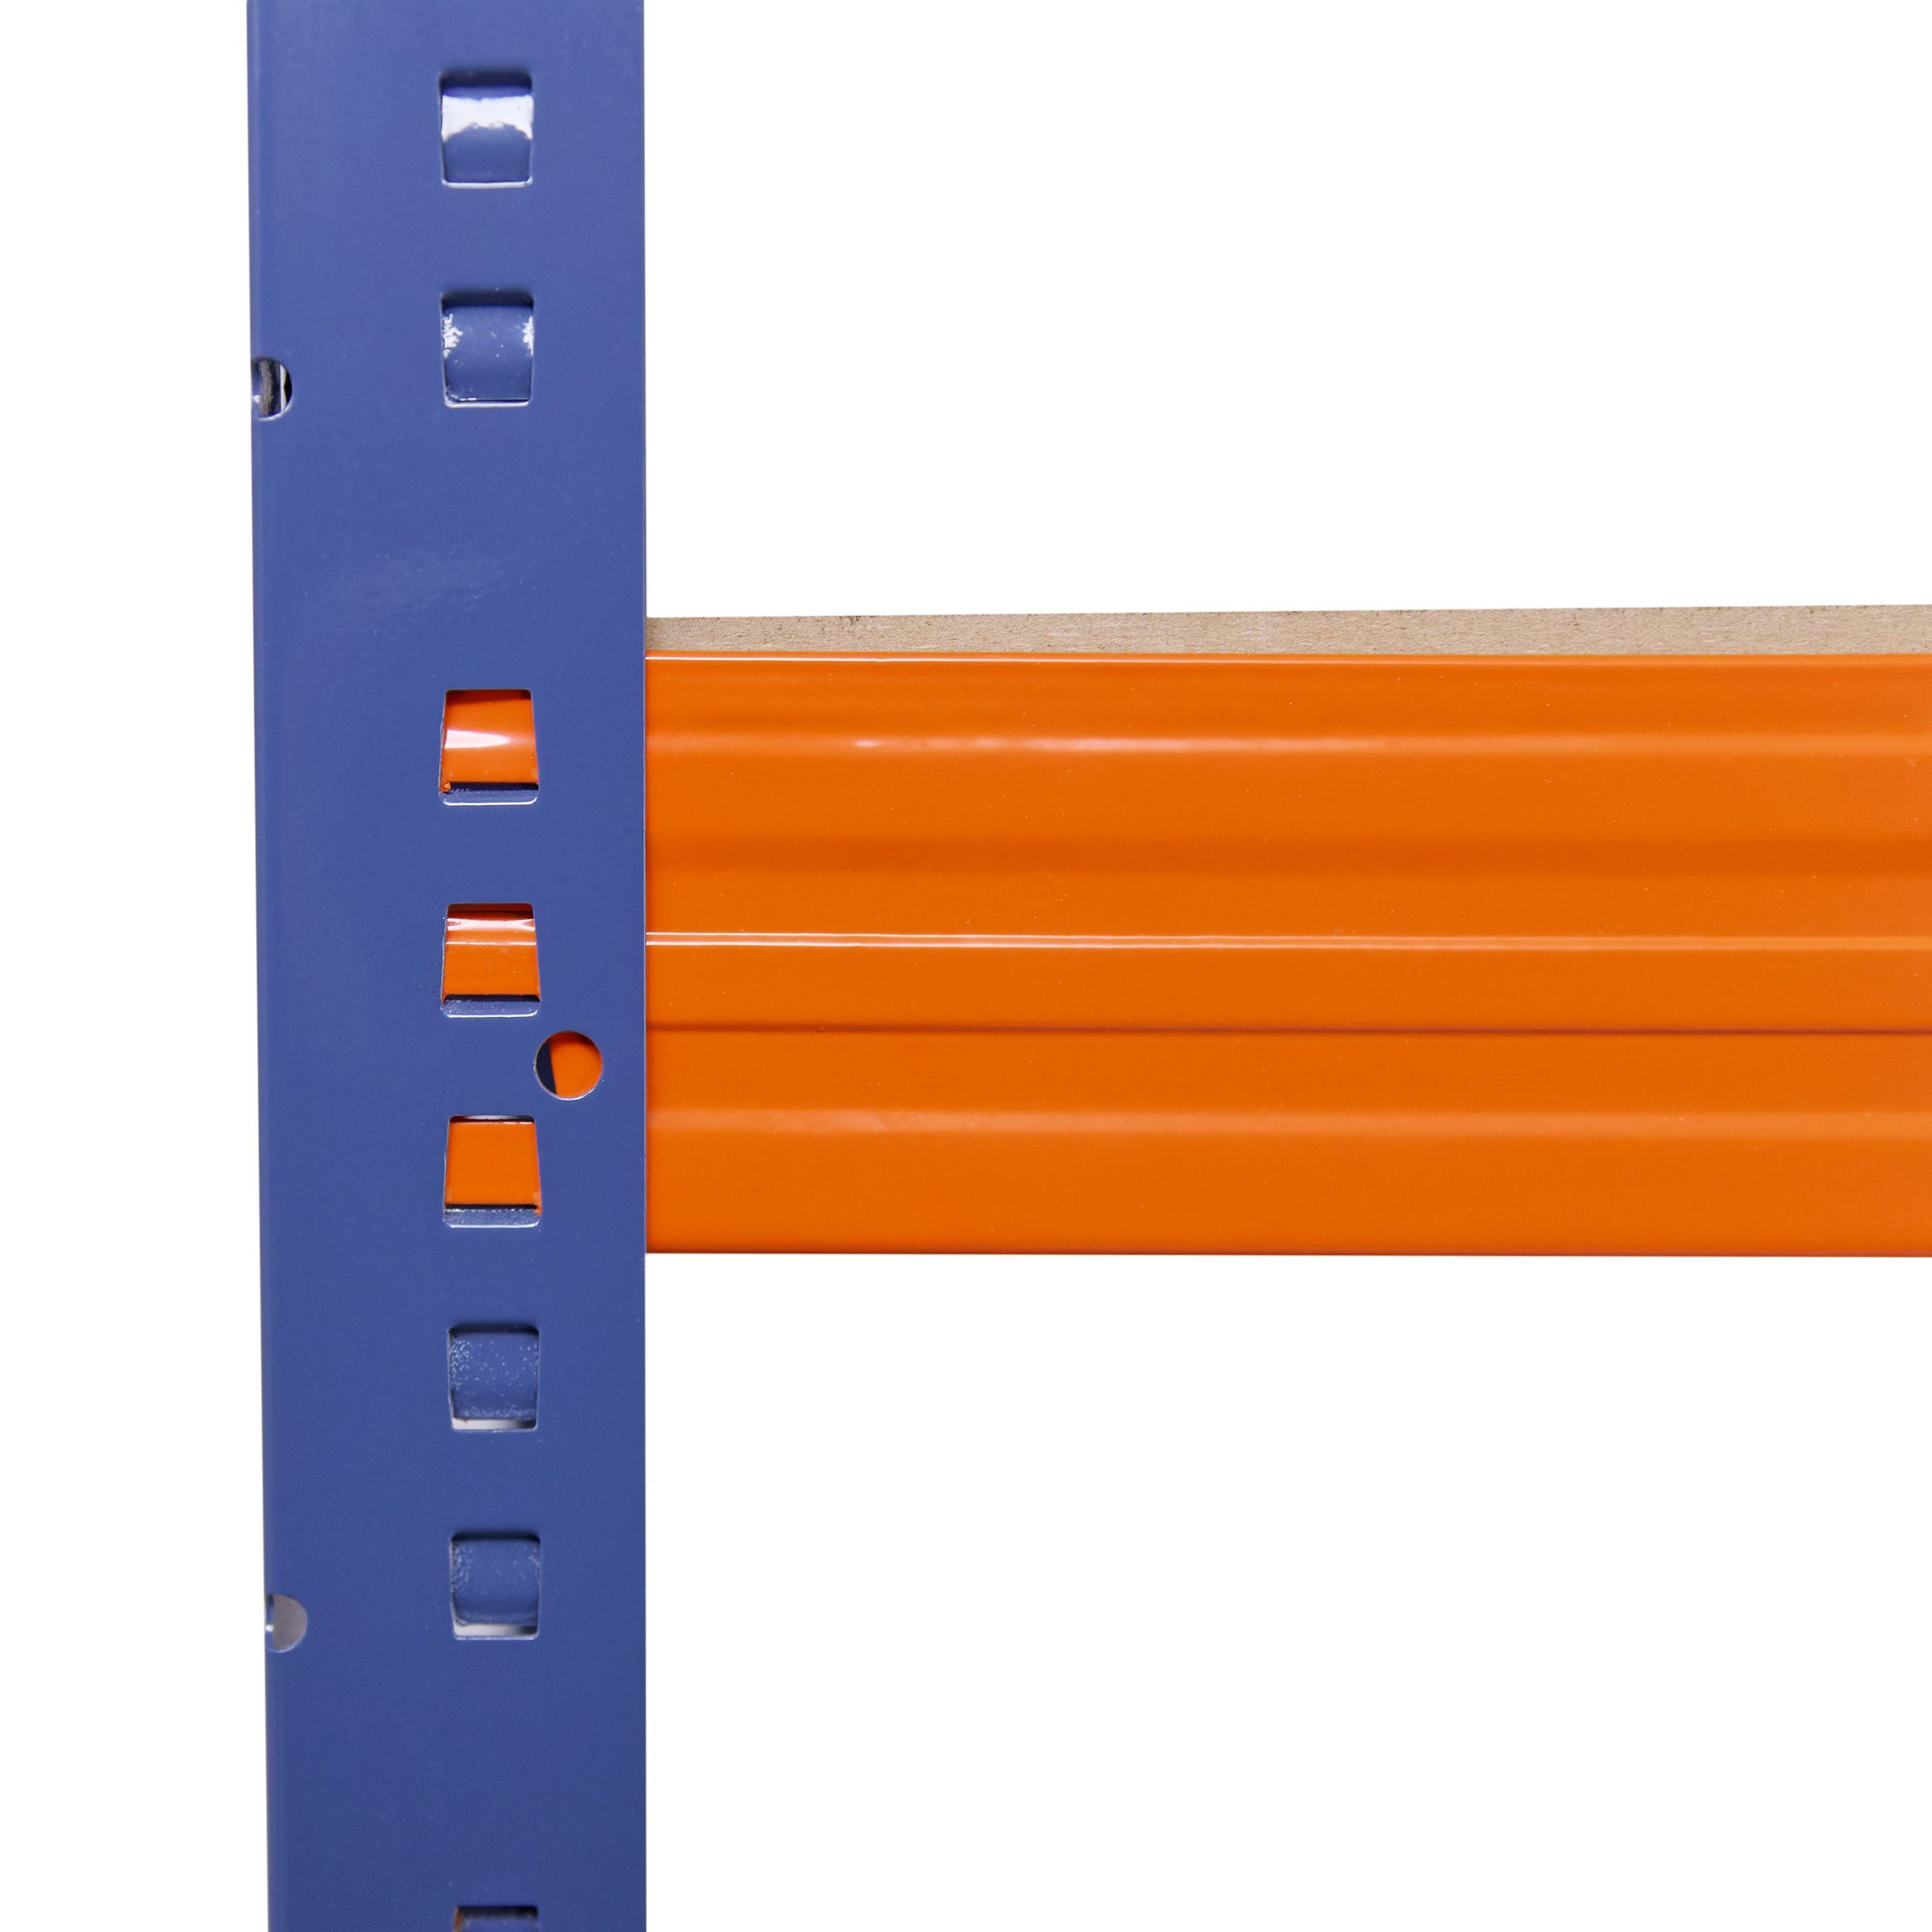 Werkstattregal 155x70x50cm Kellerregal, mit 5 blau-orange, Regale Böden als Lagerregal, Metall shelfplaza 200kg Metallregal Tragkraft, & je Steckregal Regal PROFI, Schwerlastregal Garagenregal,